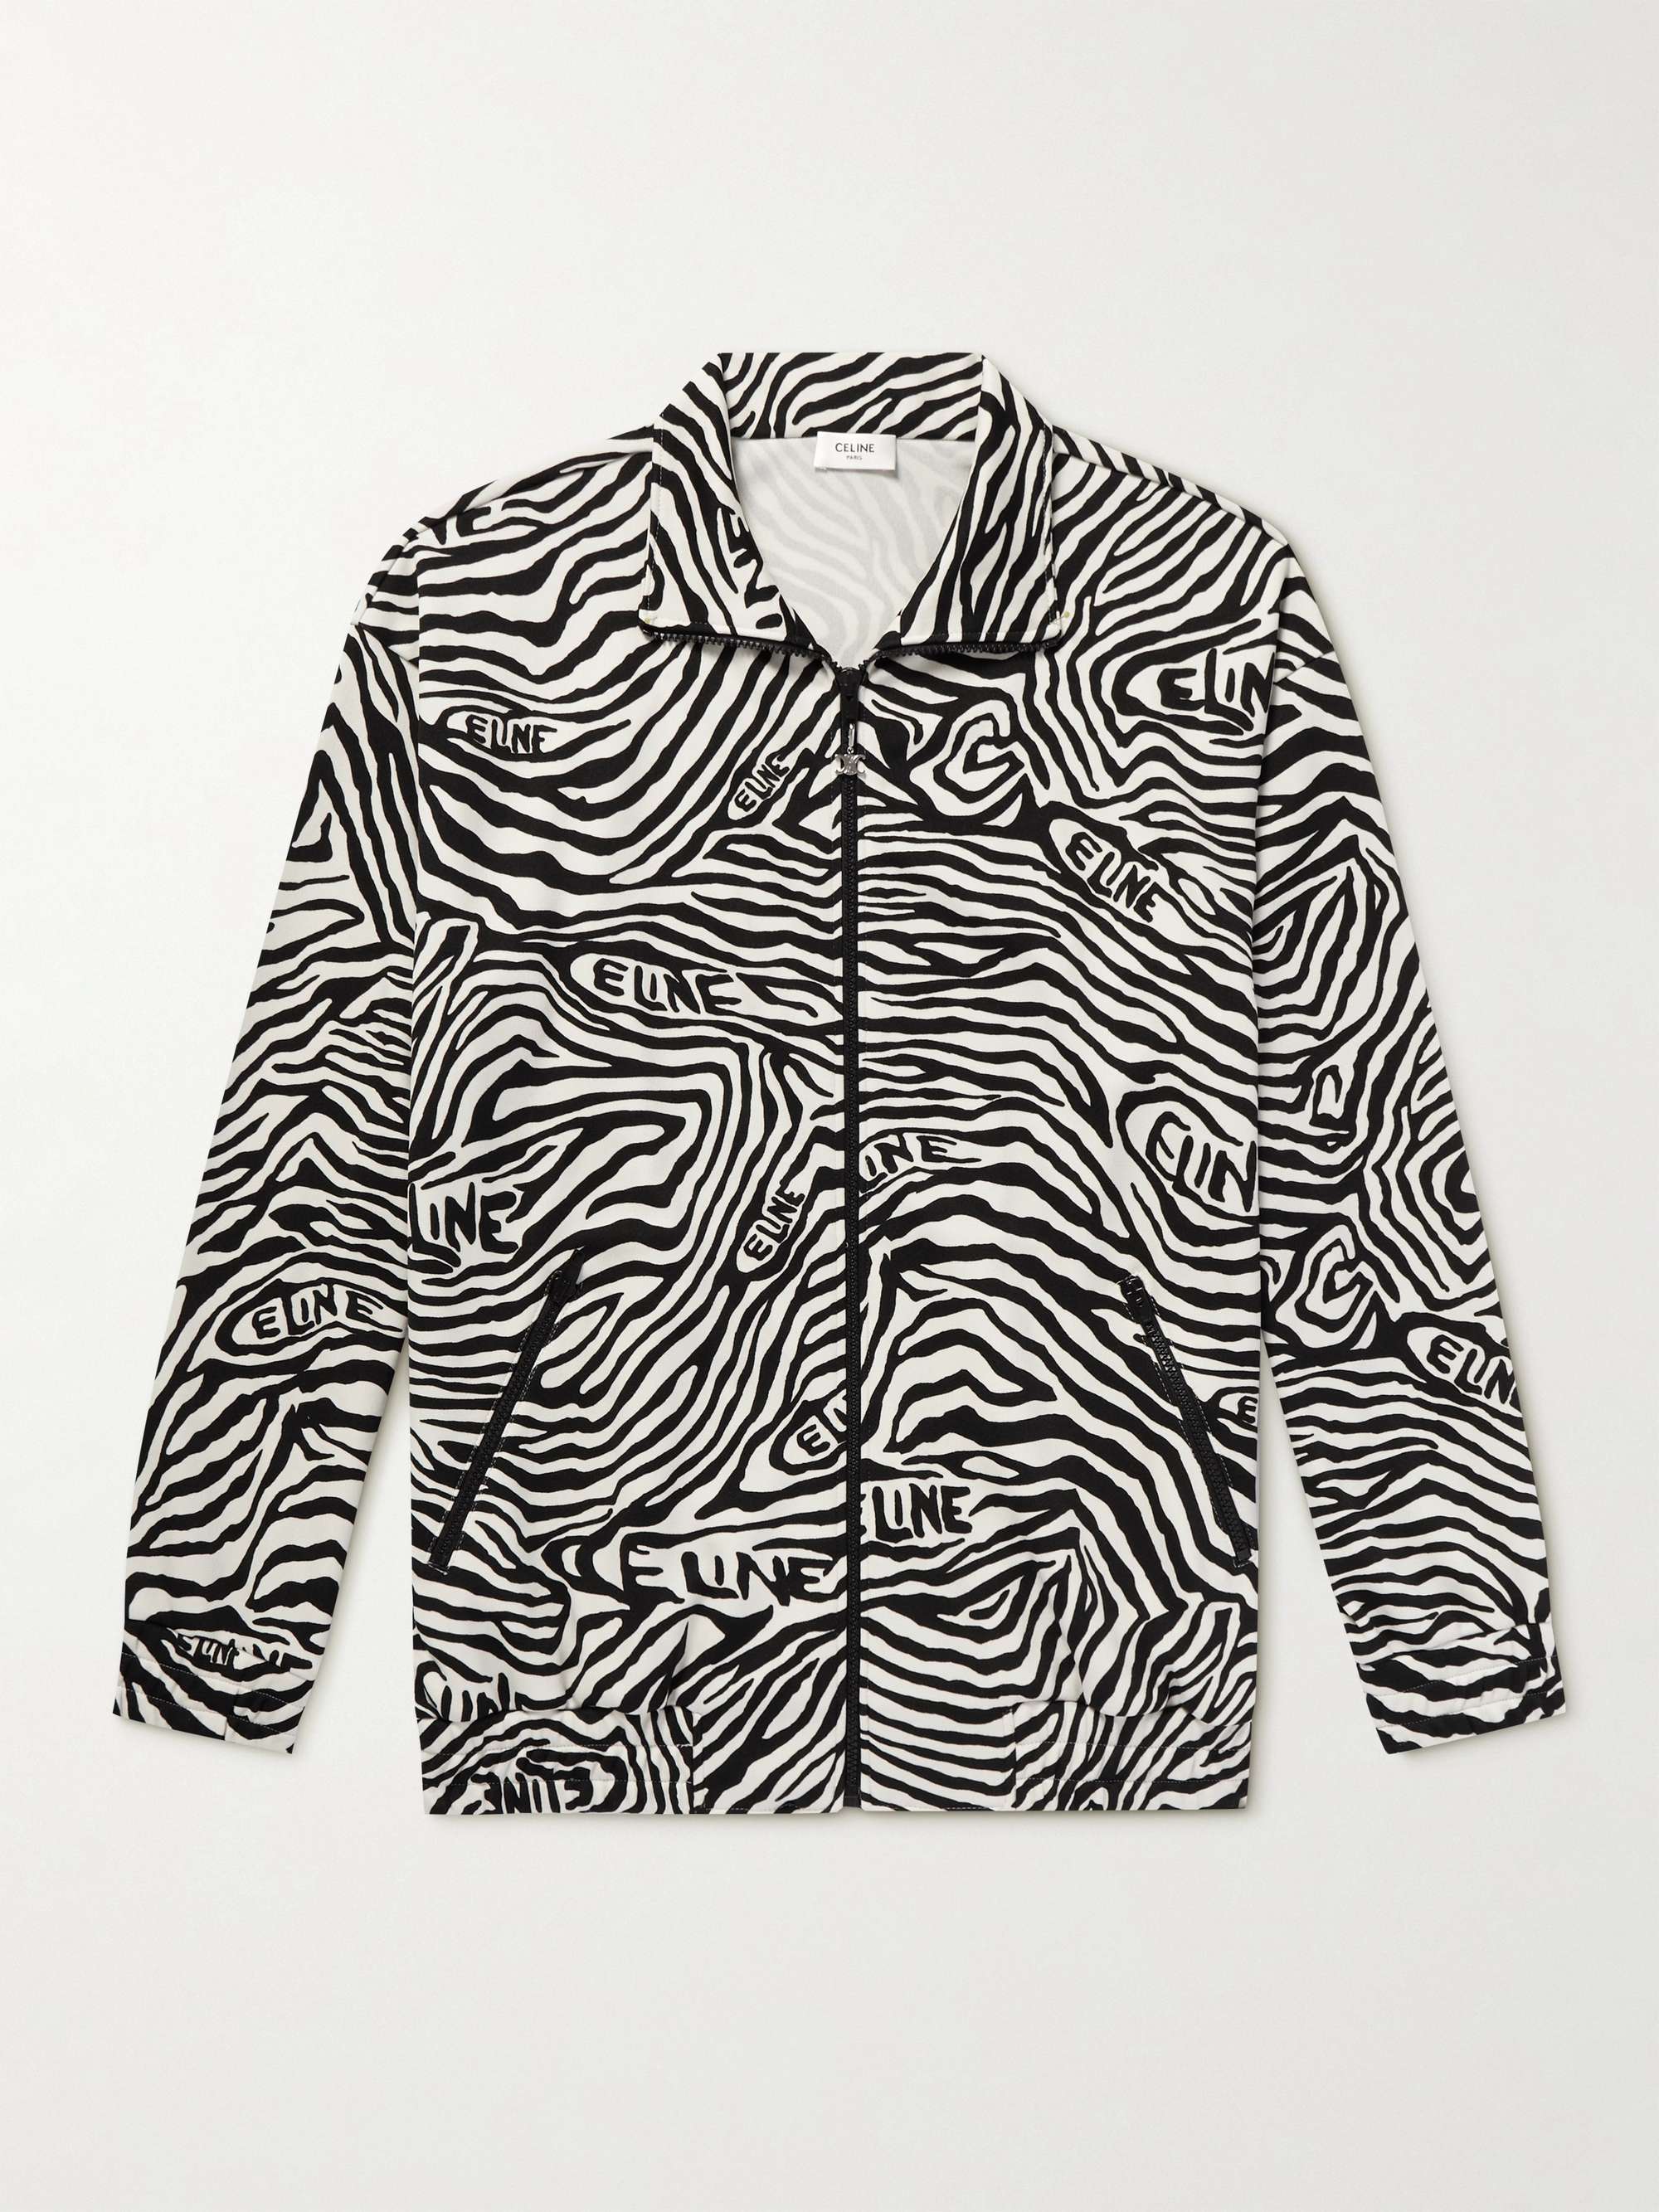 CELINE HOMME Zebra-Print Jersey Zip-Up Sweatshirt